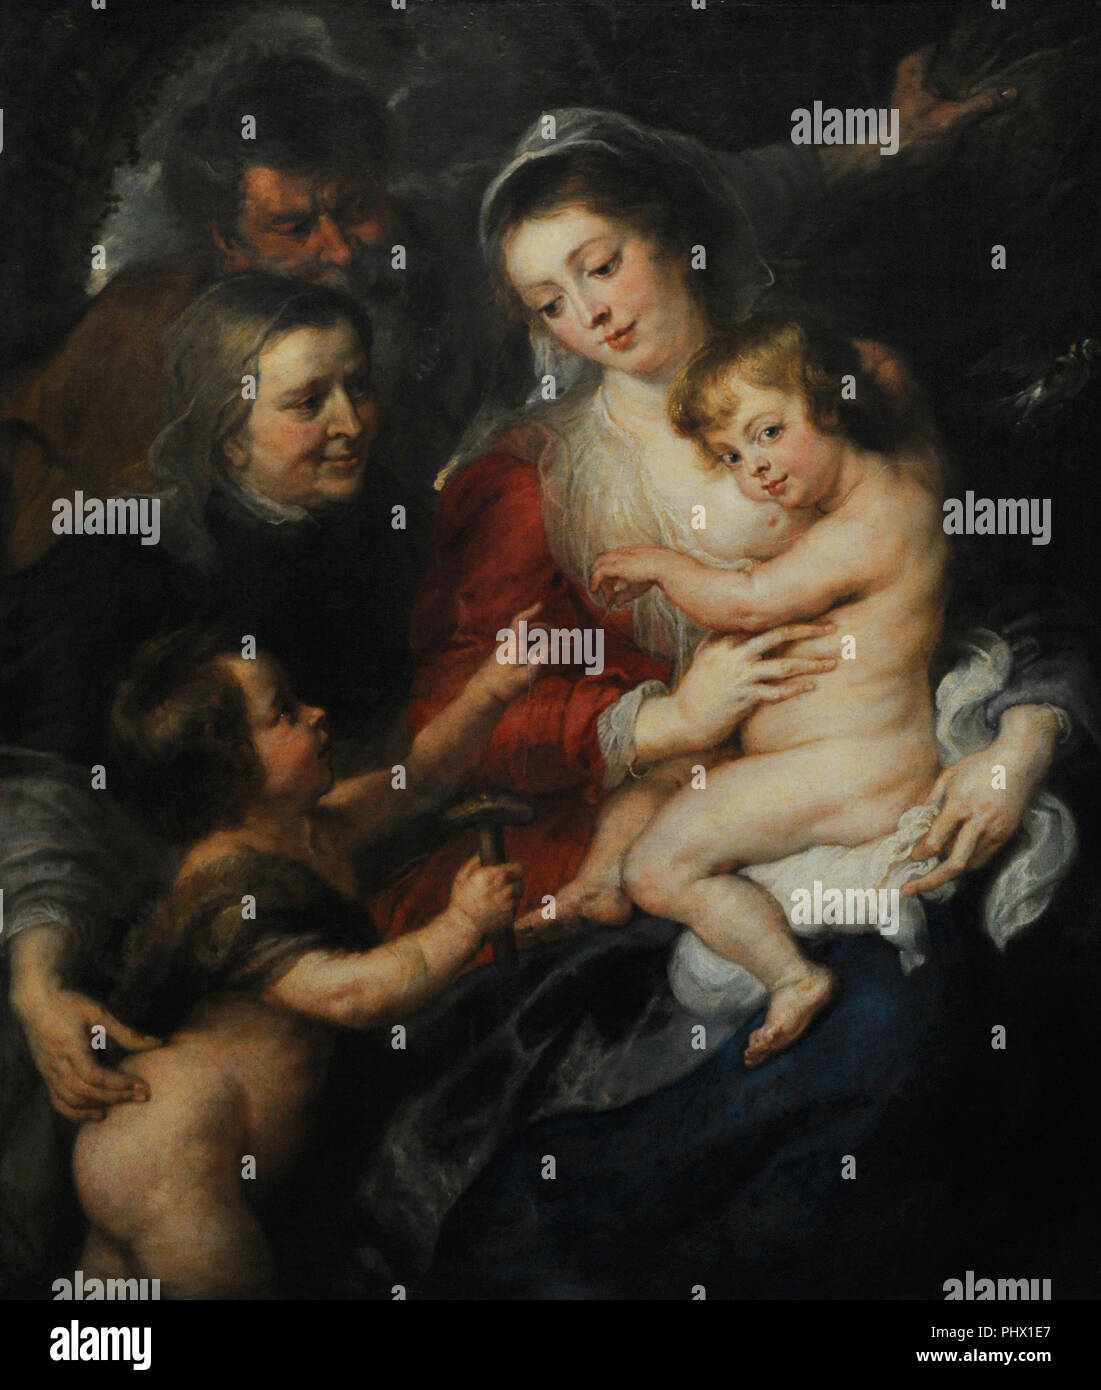 Peter Paul Rubens (1577-1640). Pittore fiammingo. La Santa Famiglia, Santa Elisabetta e San Giovanni Battista, ca.1634. Wallraf-Richartz Museum. Colonia. Germania. Foto Stock